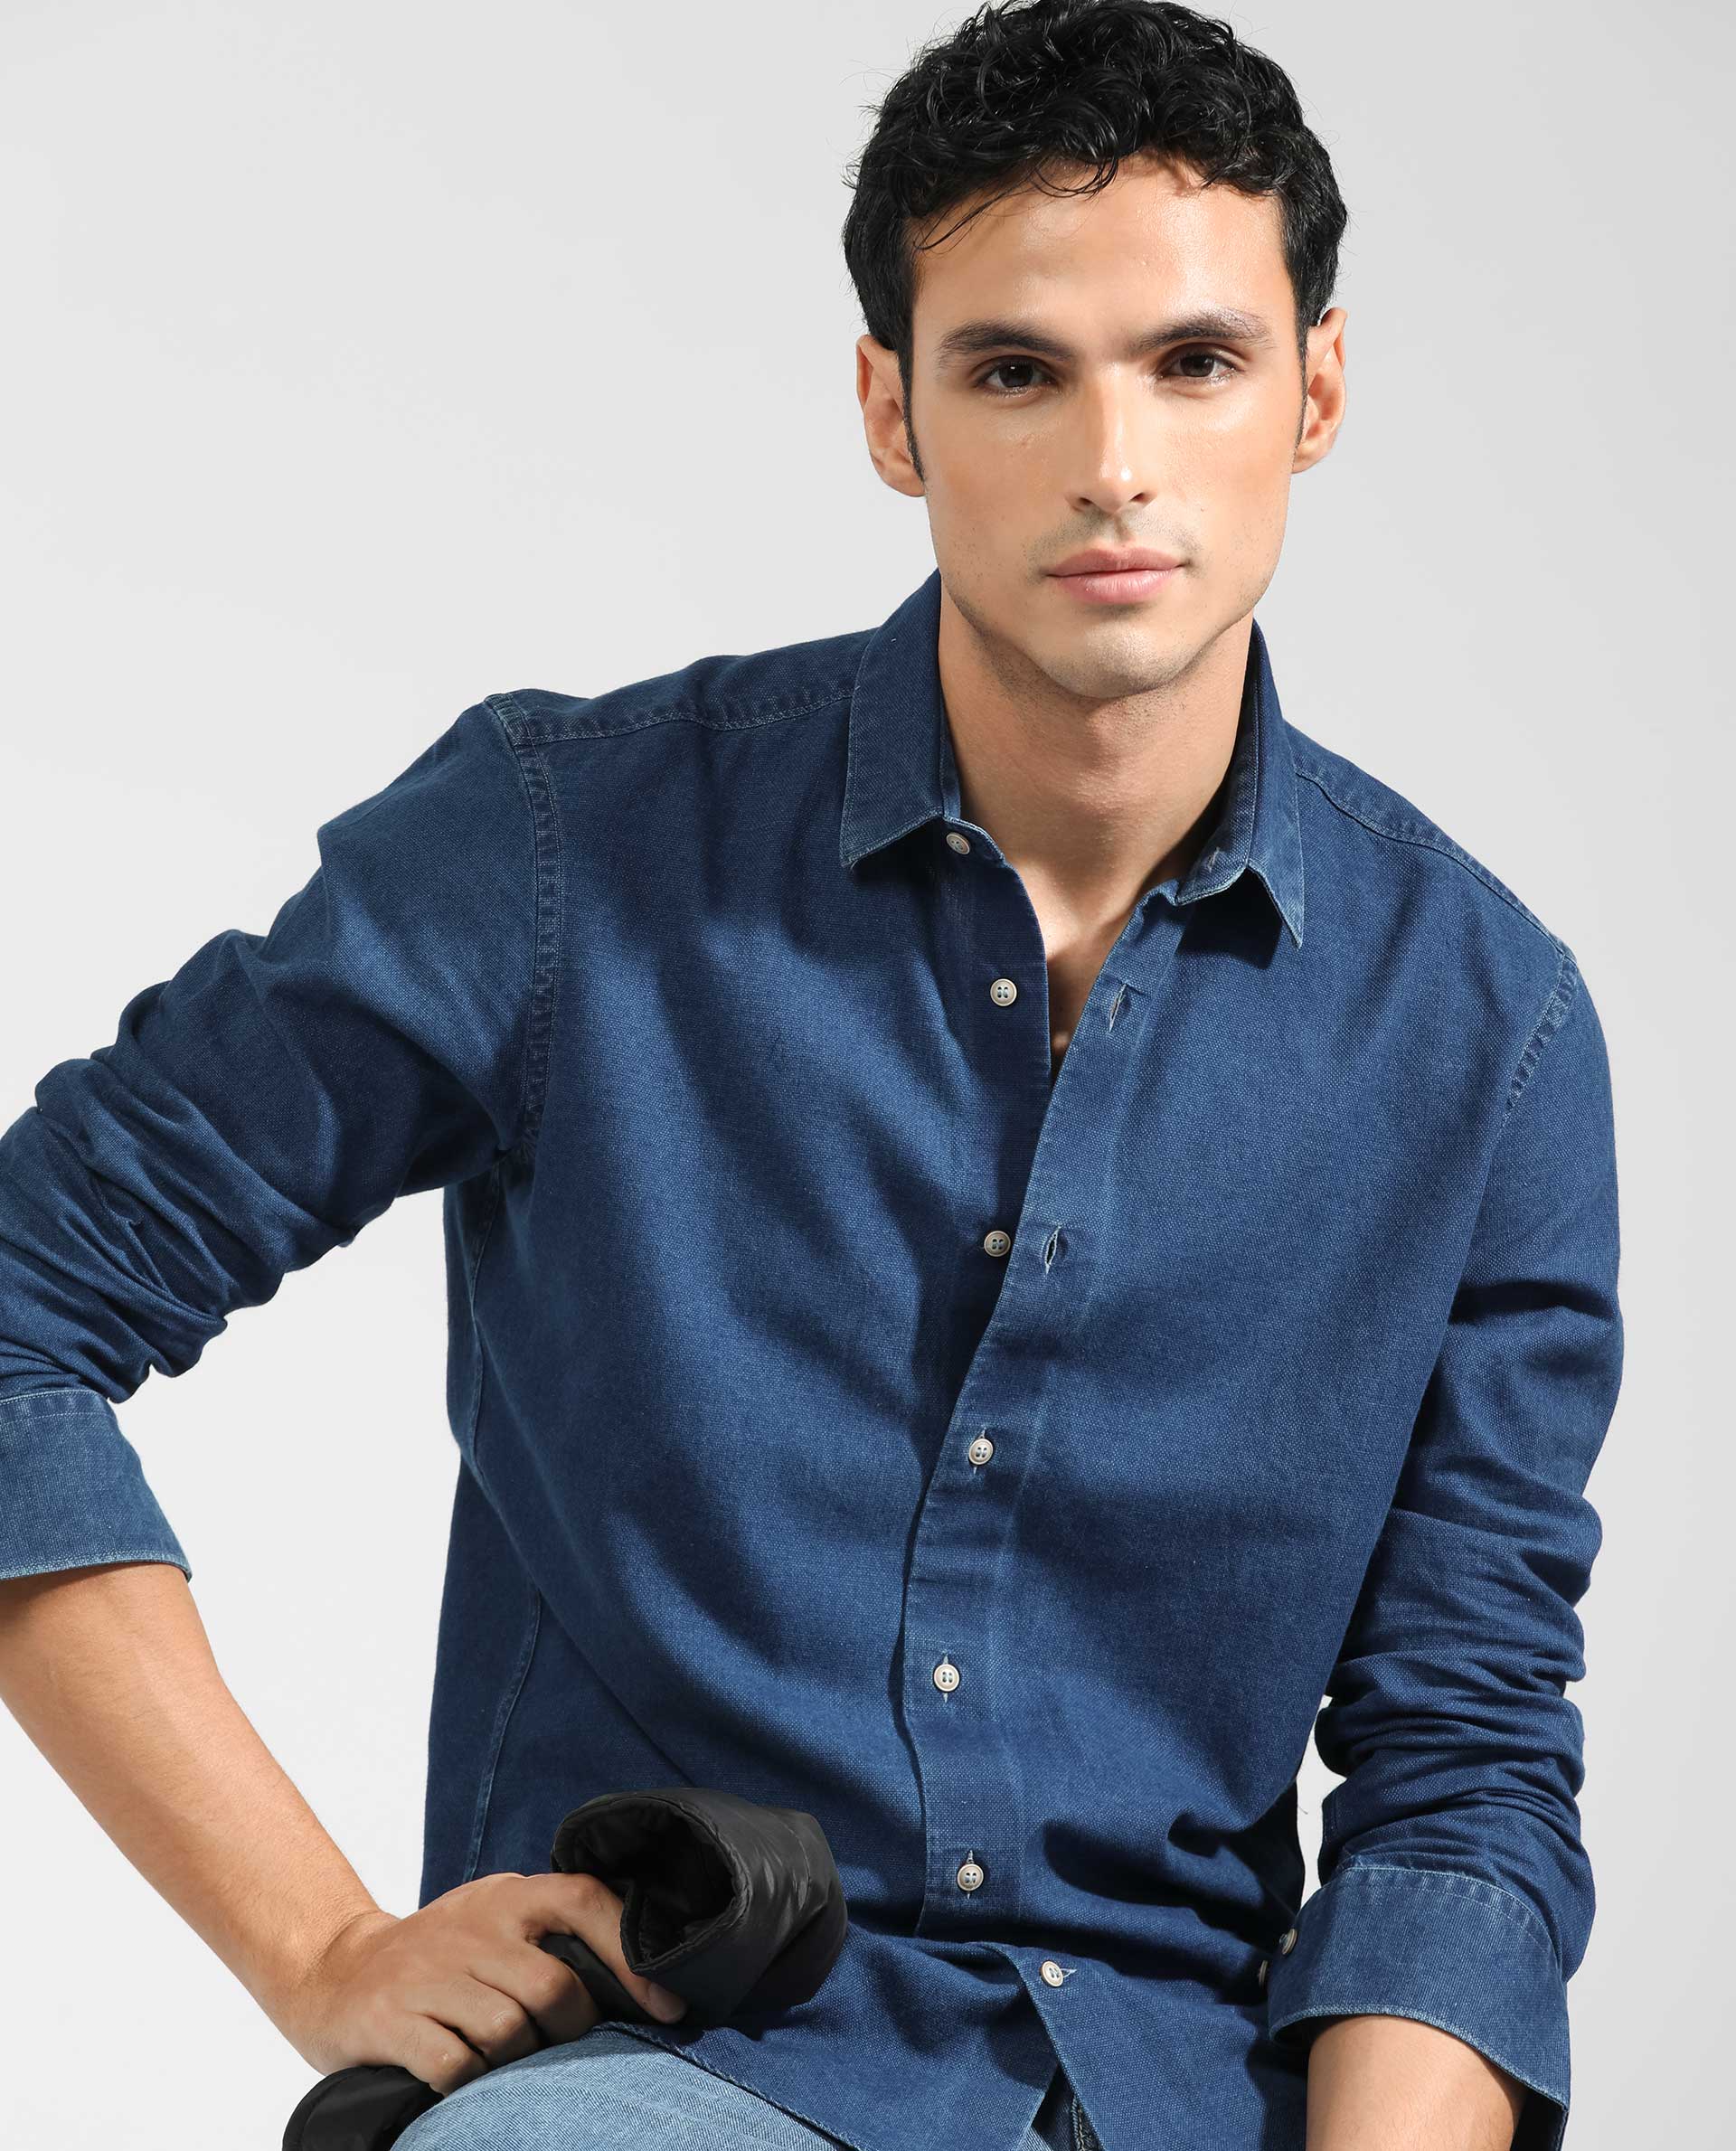 Buy Light Blue Denim Full Sleeves Shirt Shirt Online | Tistabene - Tistabene